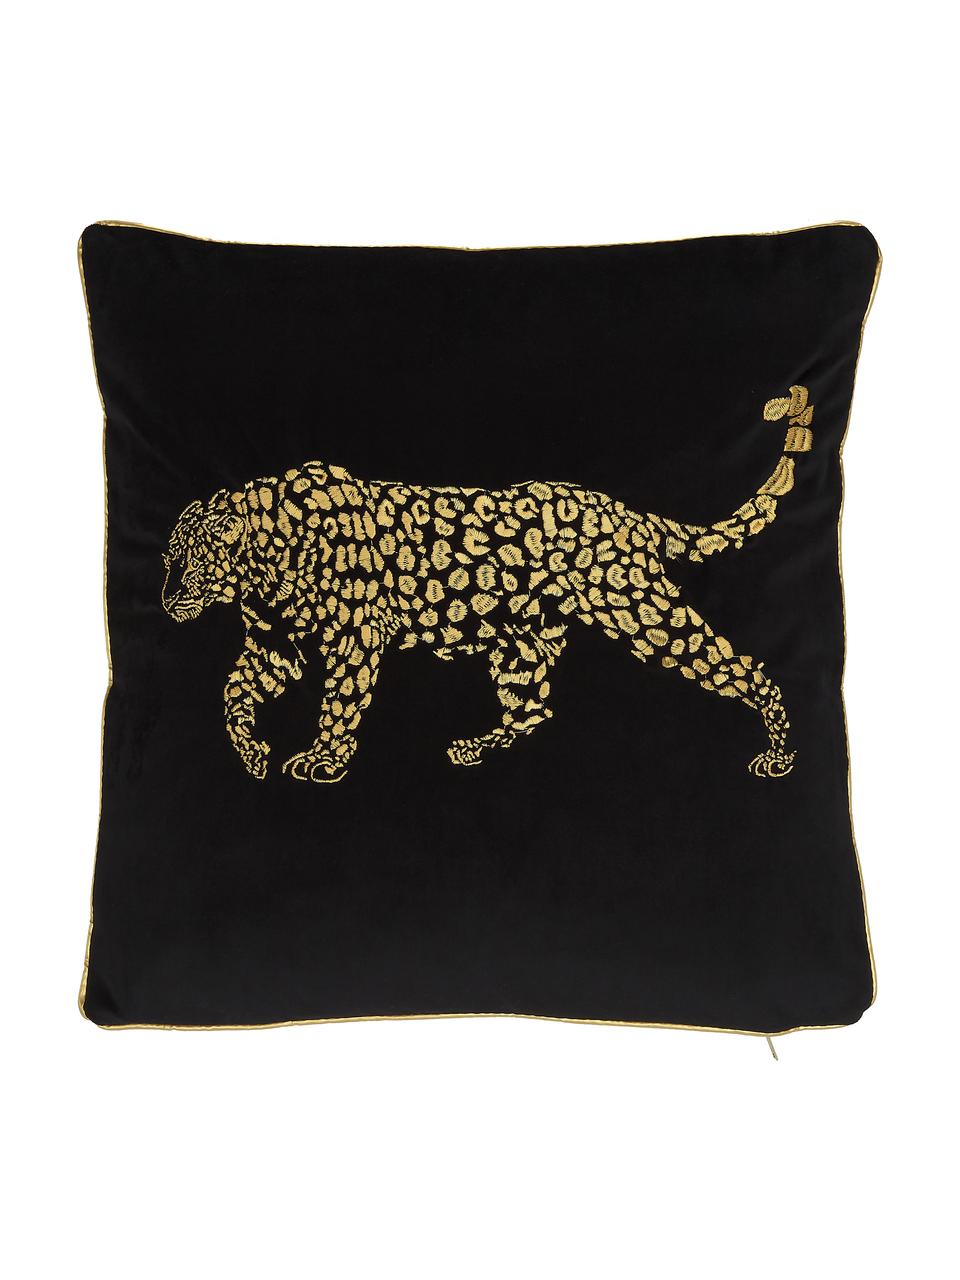 Coussin 45x45 velours noir brodé Majestic Leopard, Noir, couleur dorée